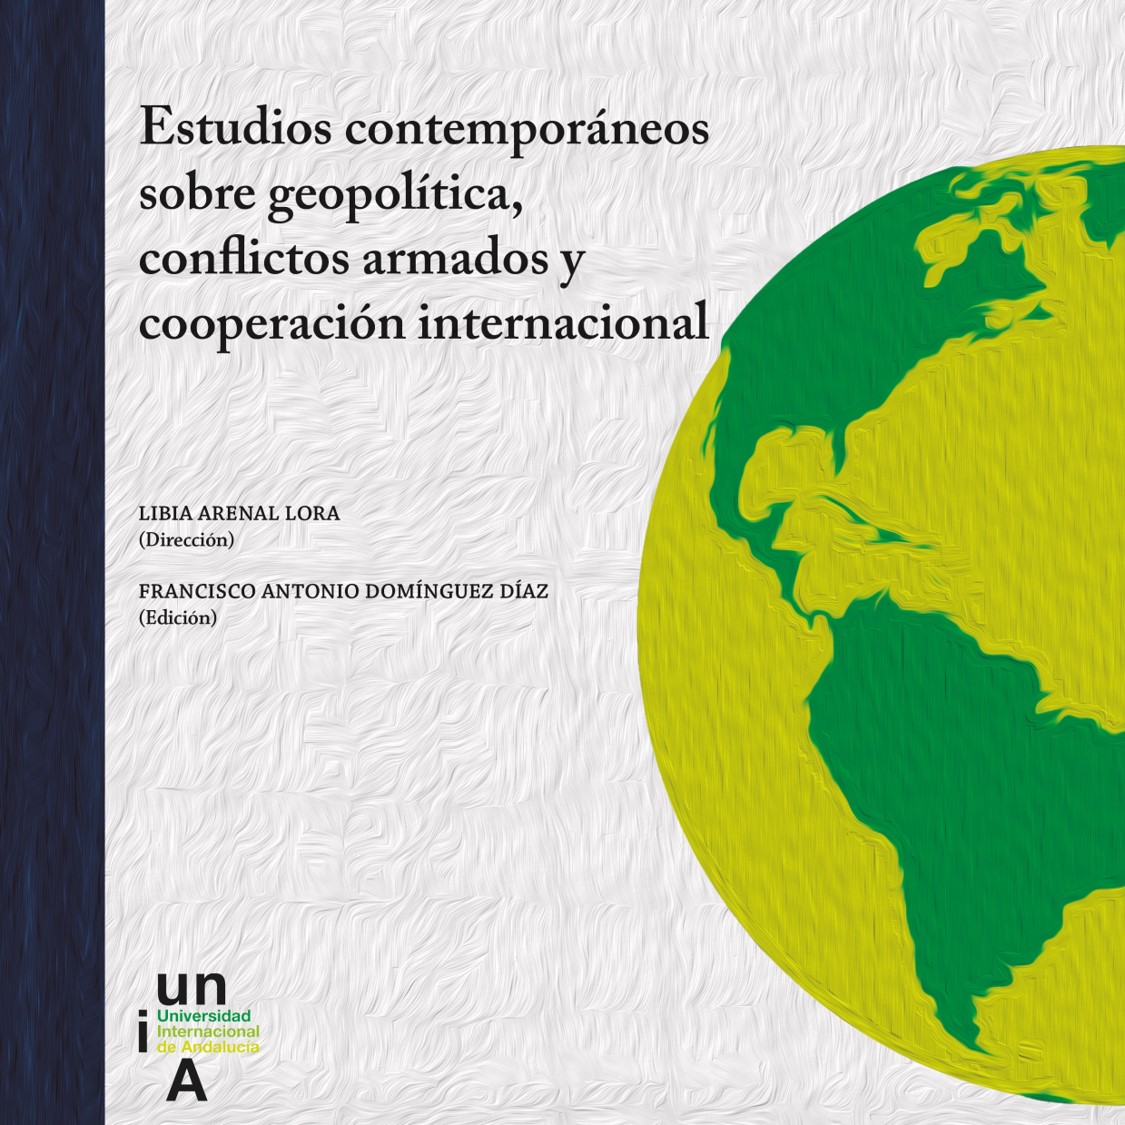 Imagen de portada del libro Estudios contemporáneos sobre geopolítica, conflictos armados y cooperación internacional